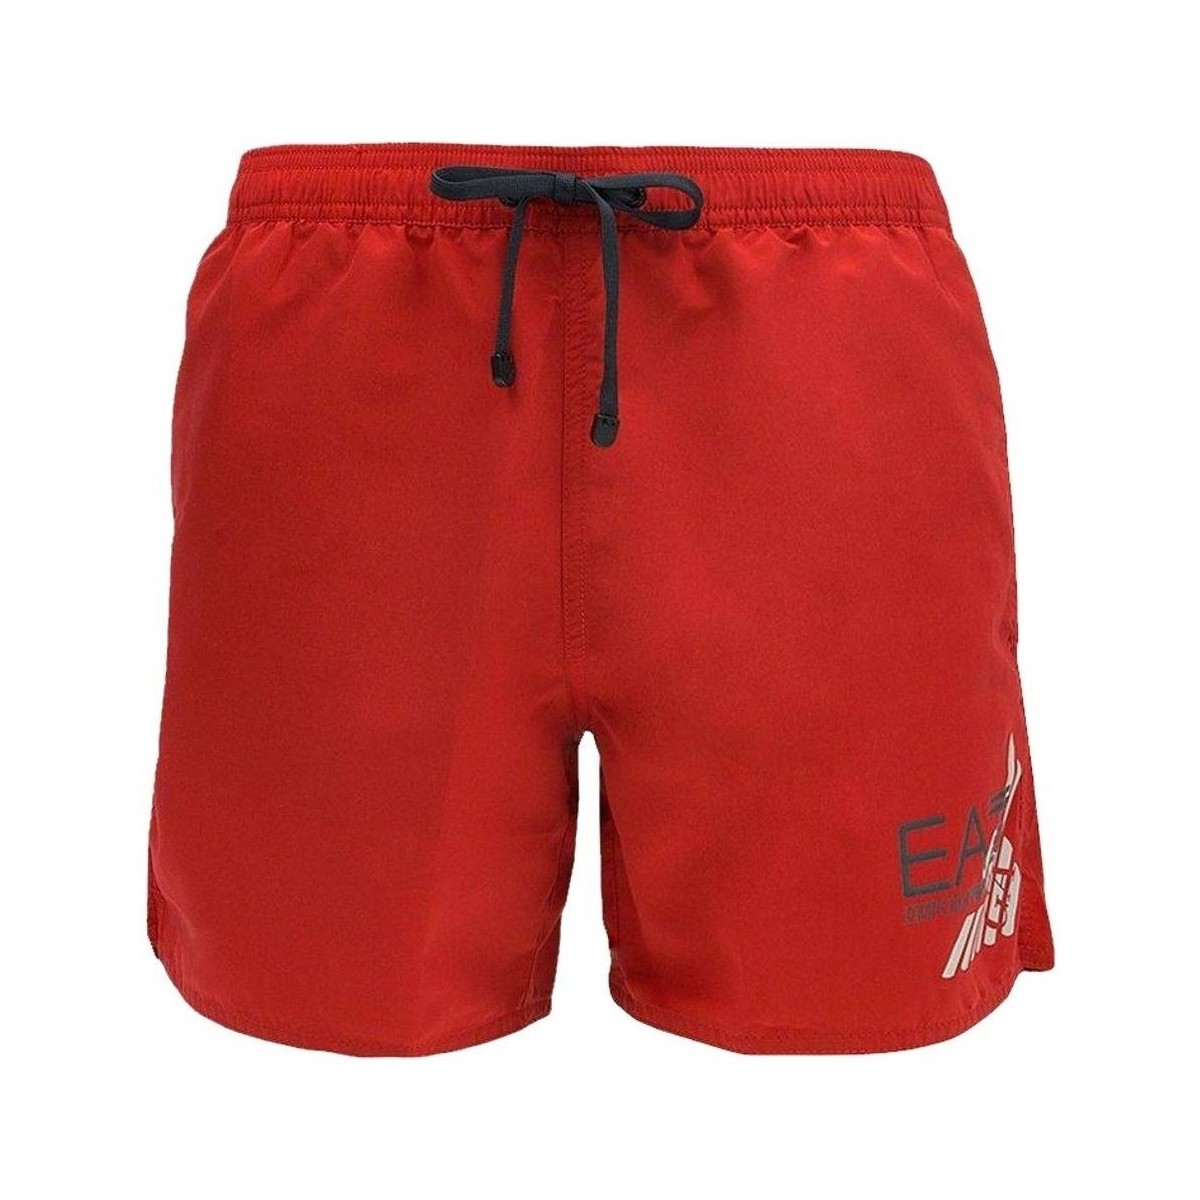 Vêtements Homme Maillots / Shorts de bain Ea7 Emporio Armani Costume EA7 homme 902000 P755-rouge Rouge